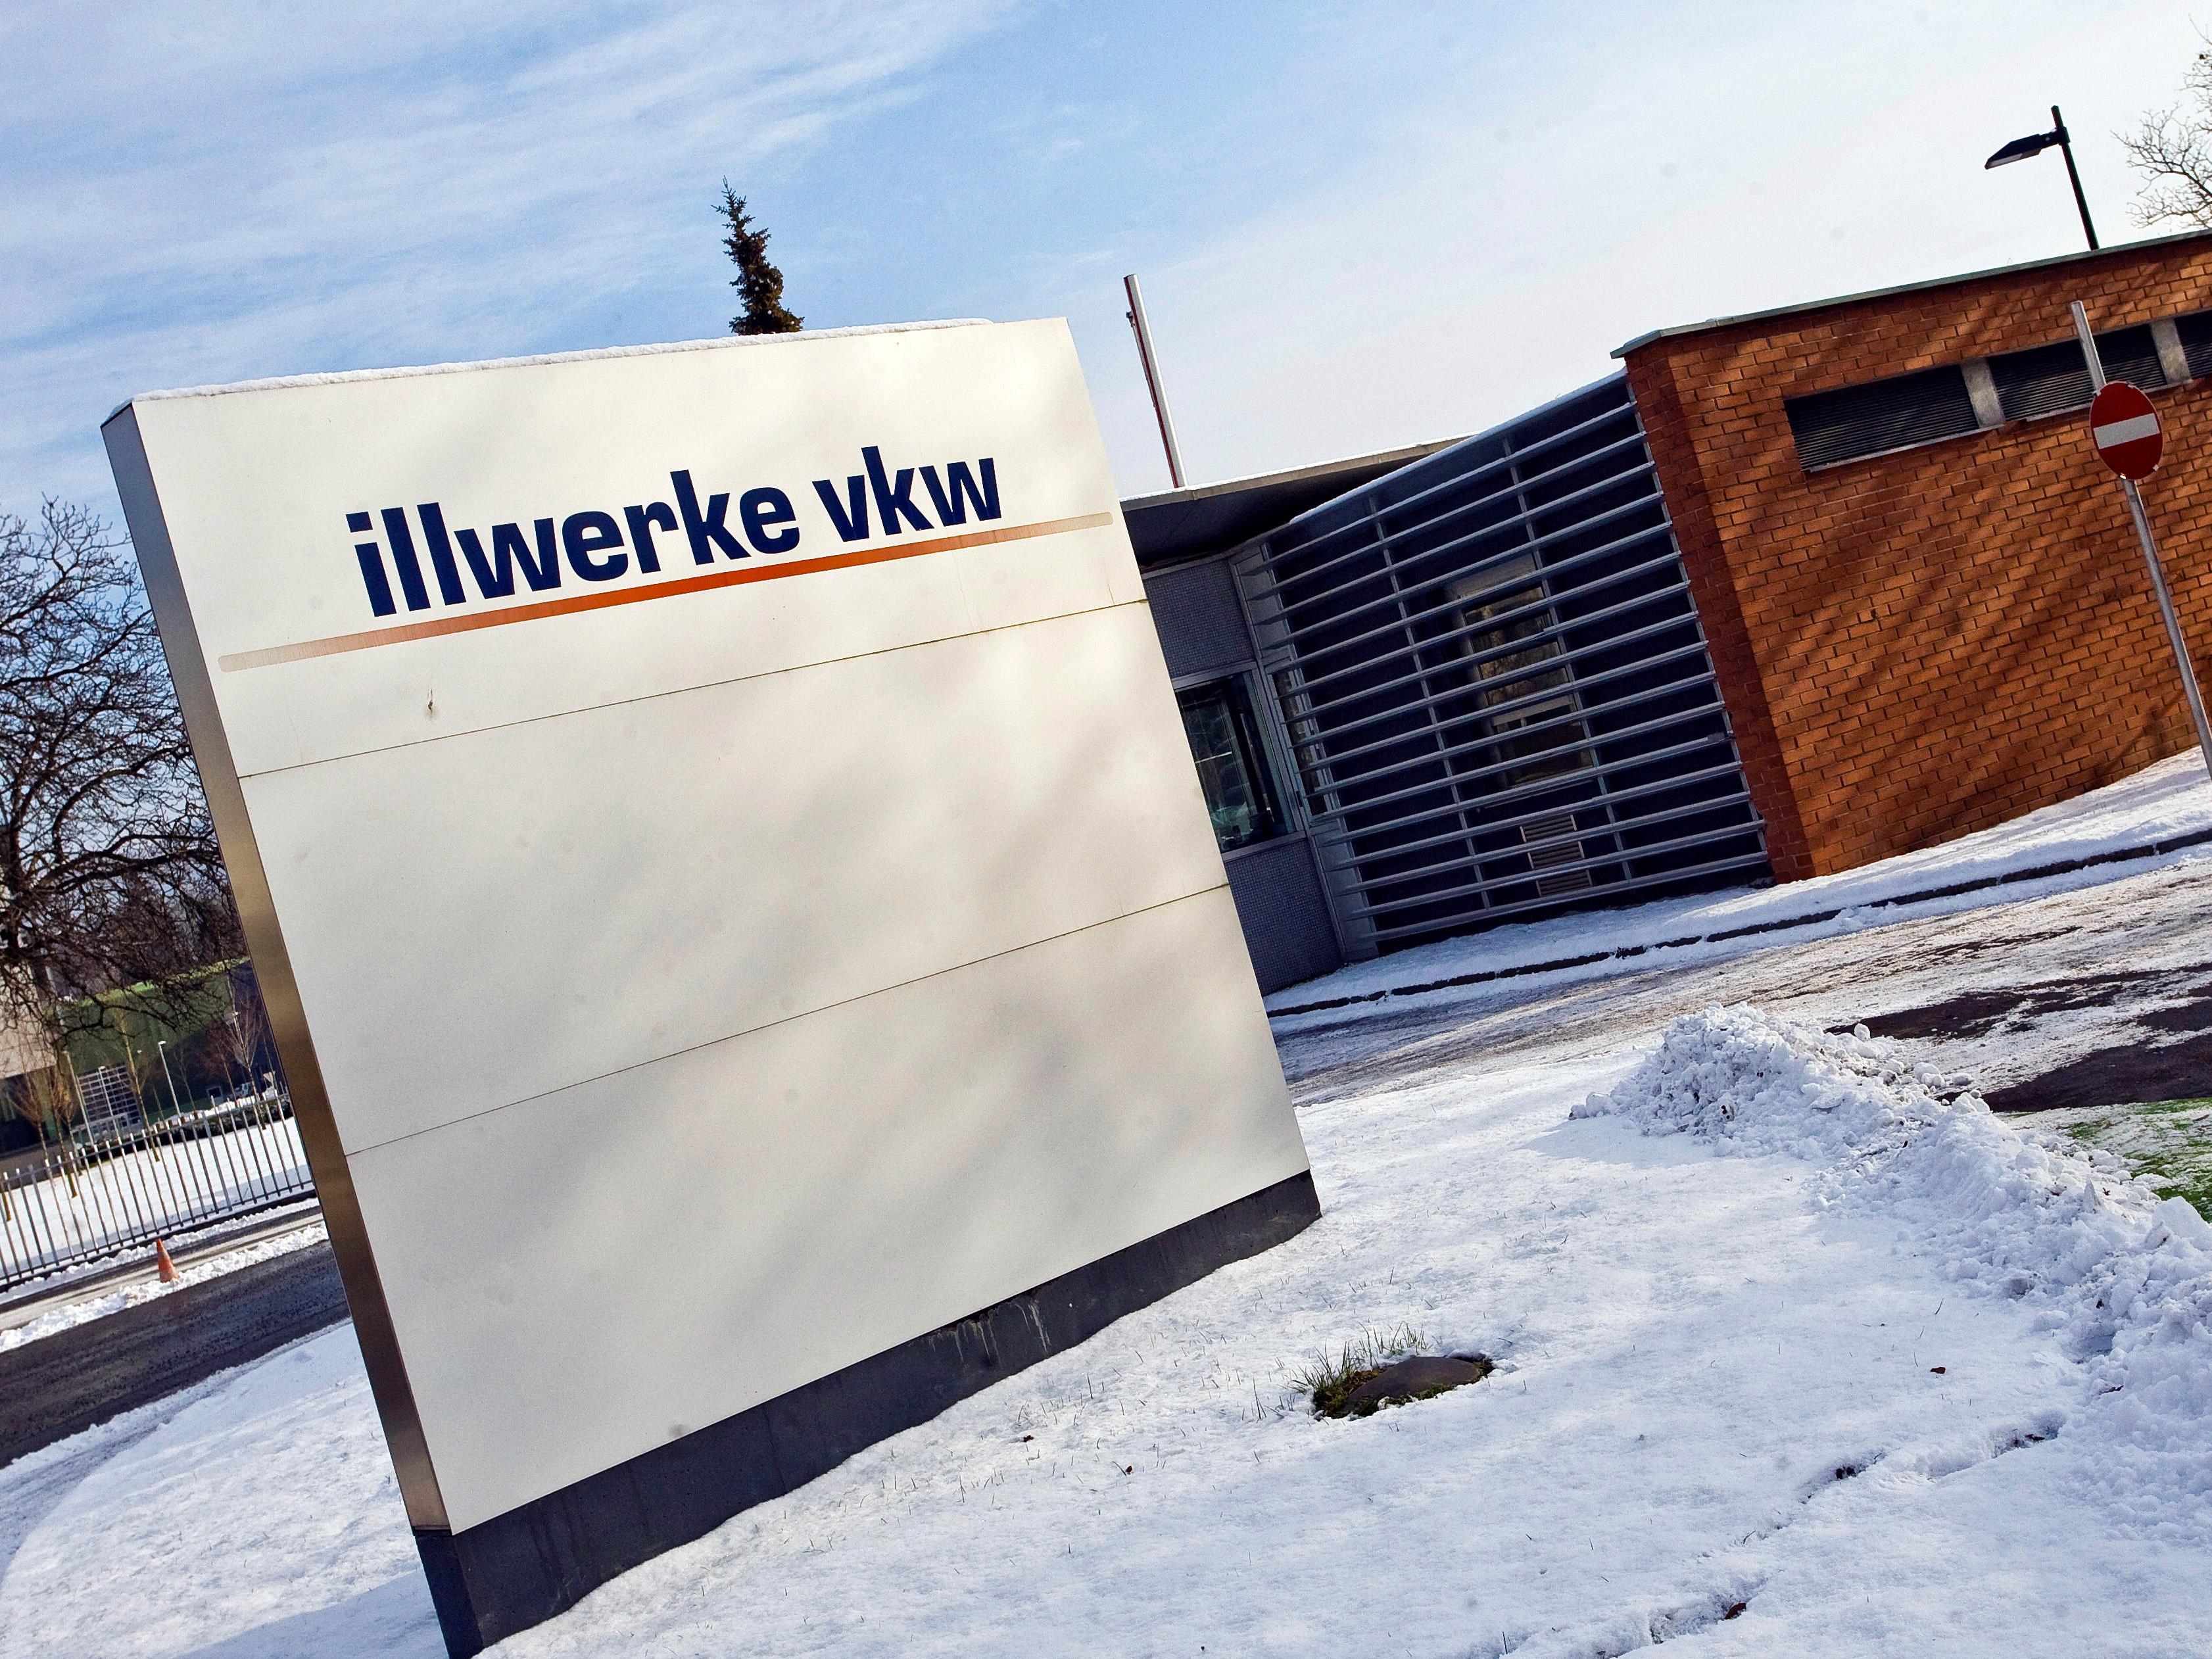 Die illlwerke vkw investiert 2016 229 Millionen Euro.